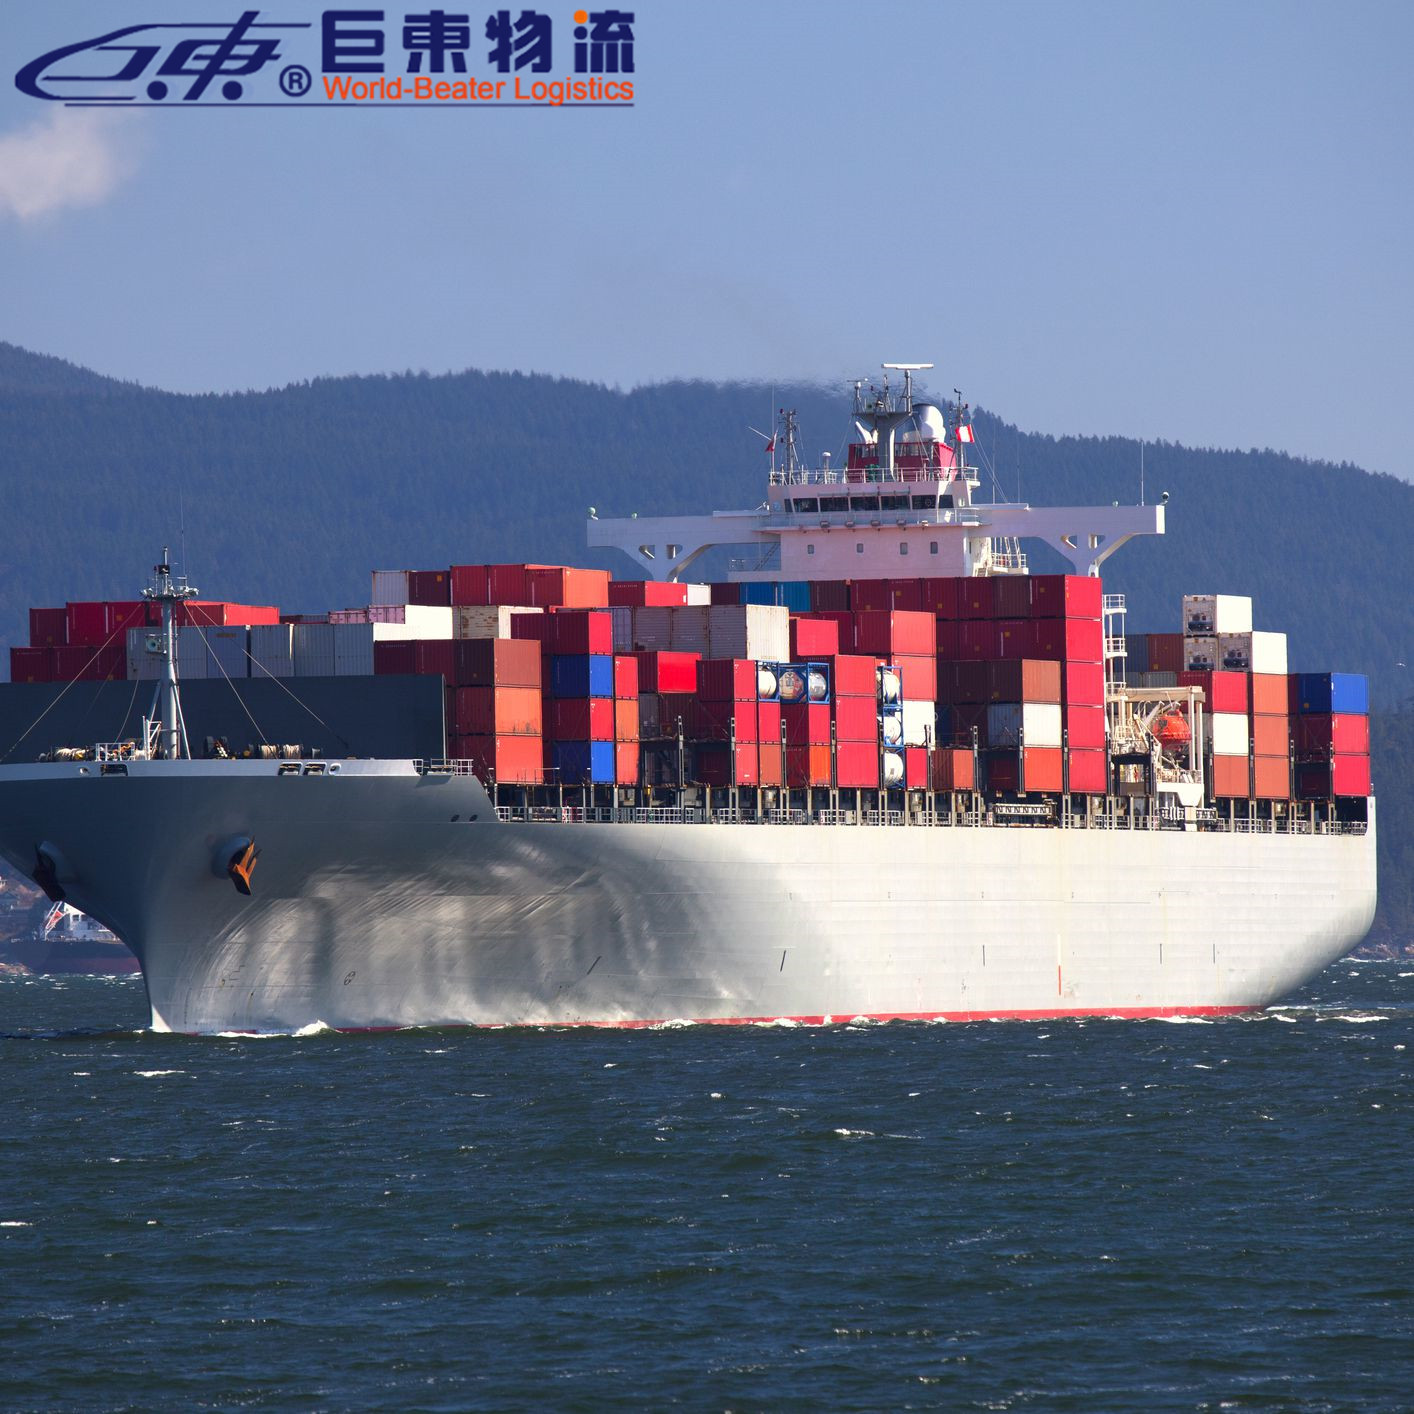 深圳到德国fba专线海运 中山非洲海运专线 巨东物流13年海运服务专业可靠